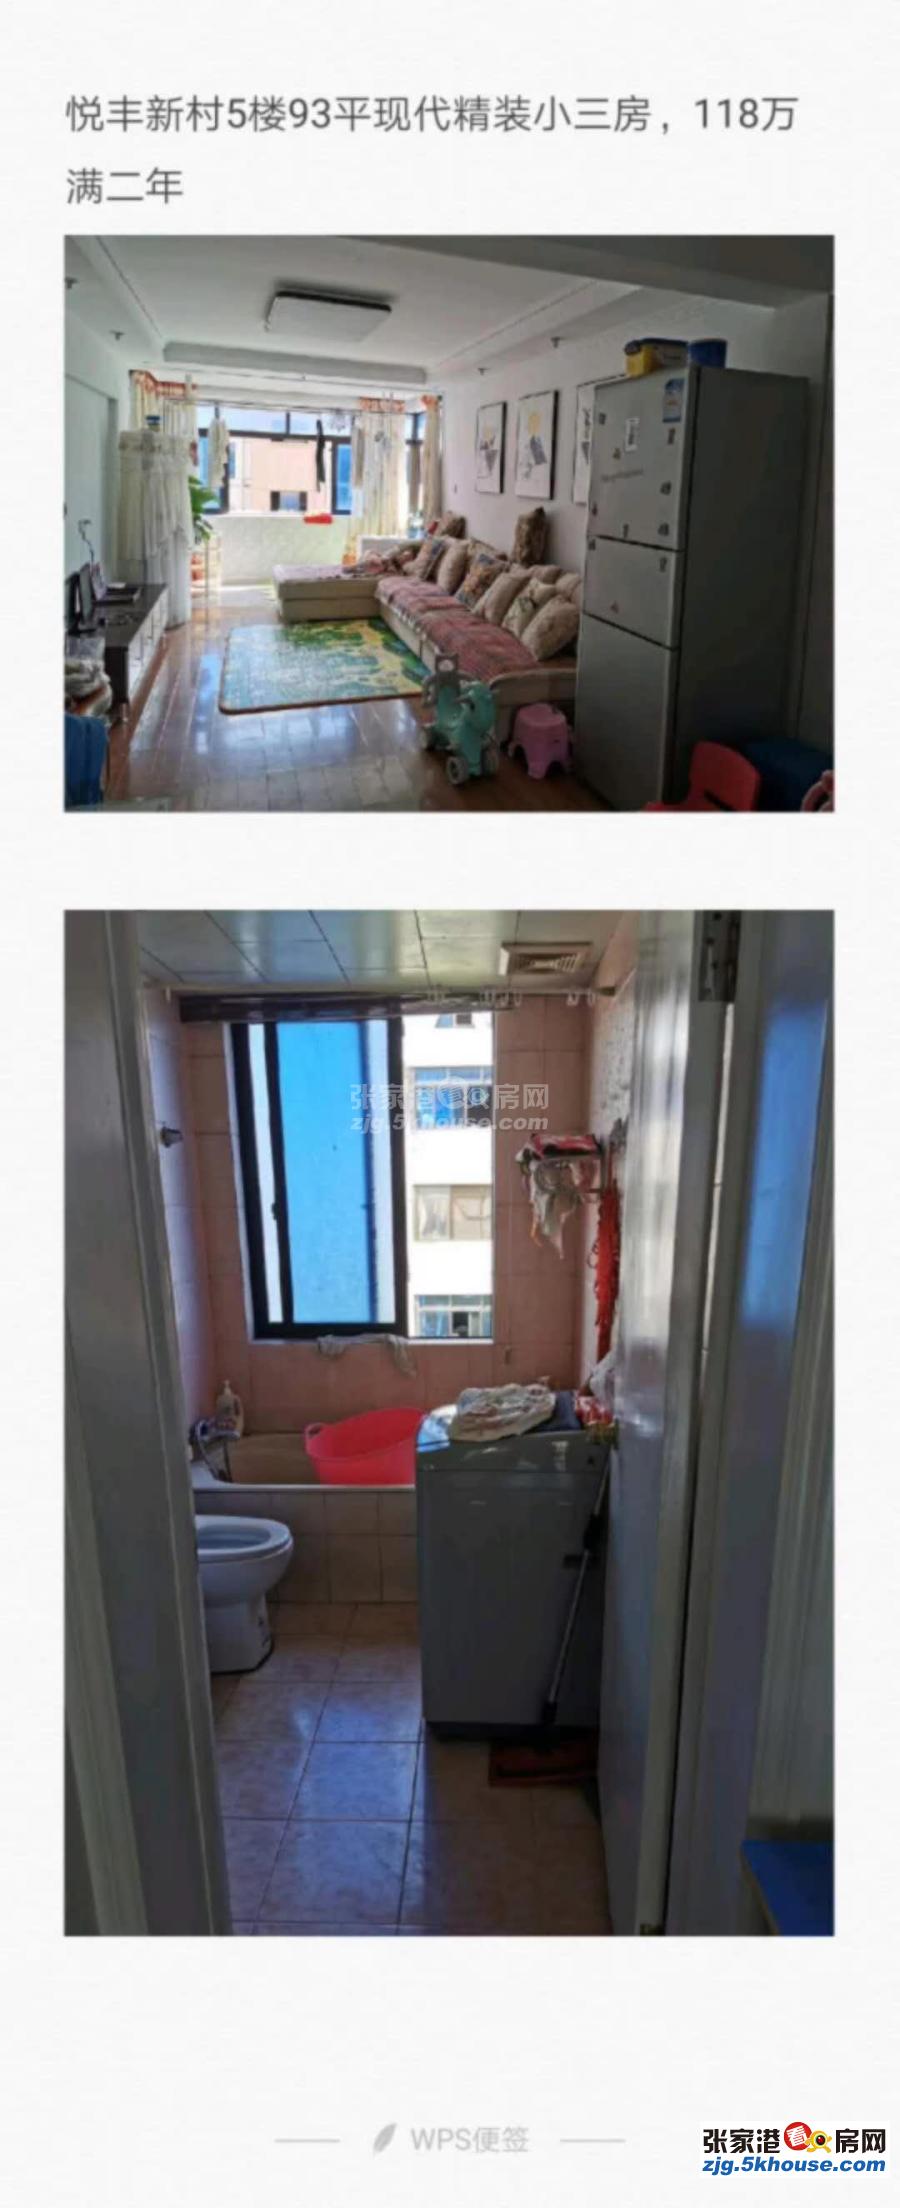 悦丰新村 118万 3室1厅1卫 精装修 适合和人多的家庭